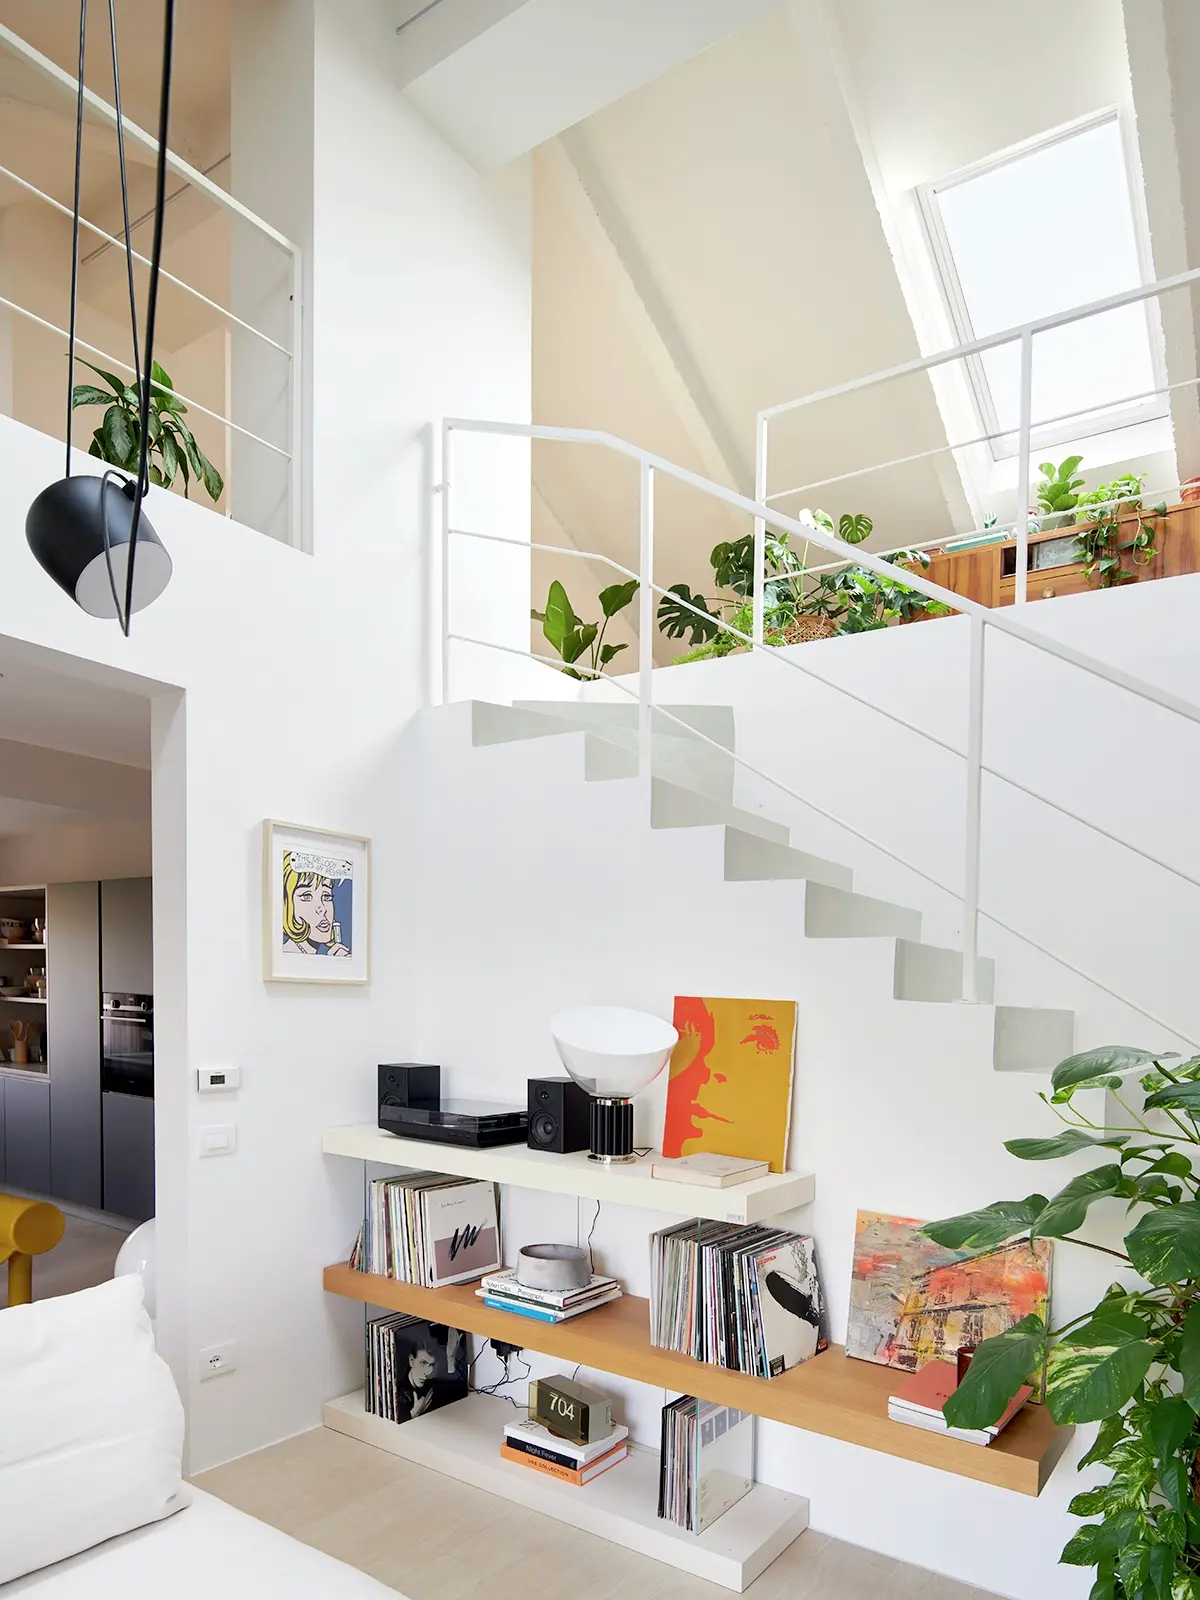 Escalier moderne lumineux avec fenêtre de toit VELUX, étagères en bois et plantes d'intérieur.